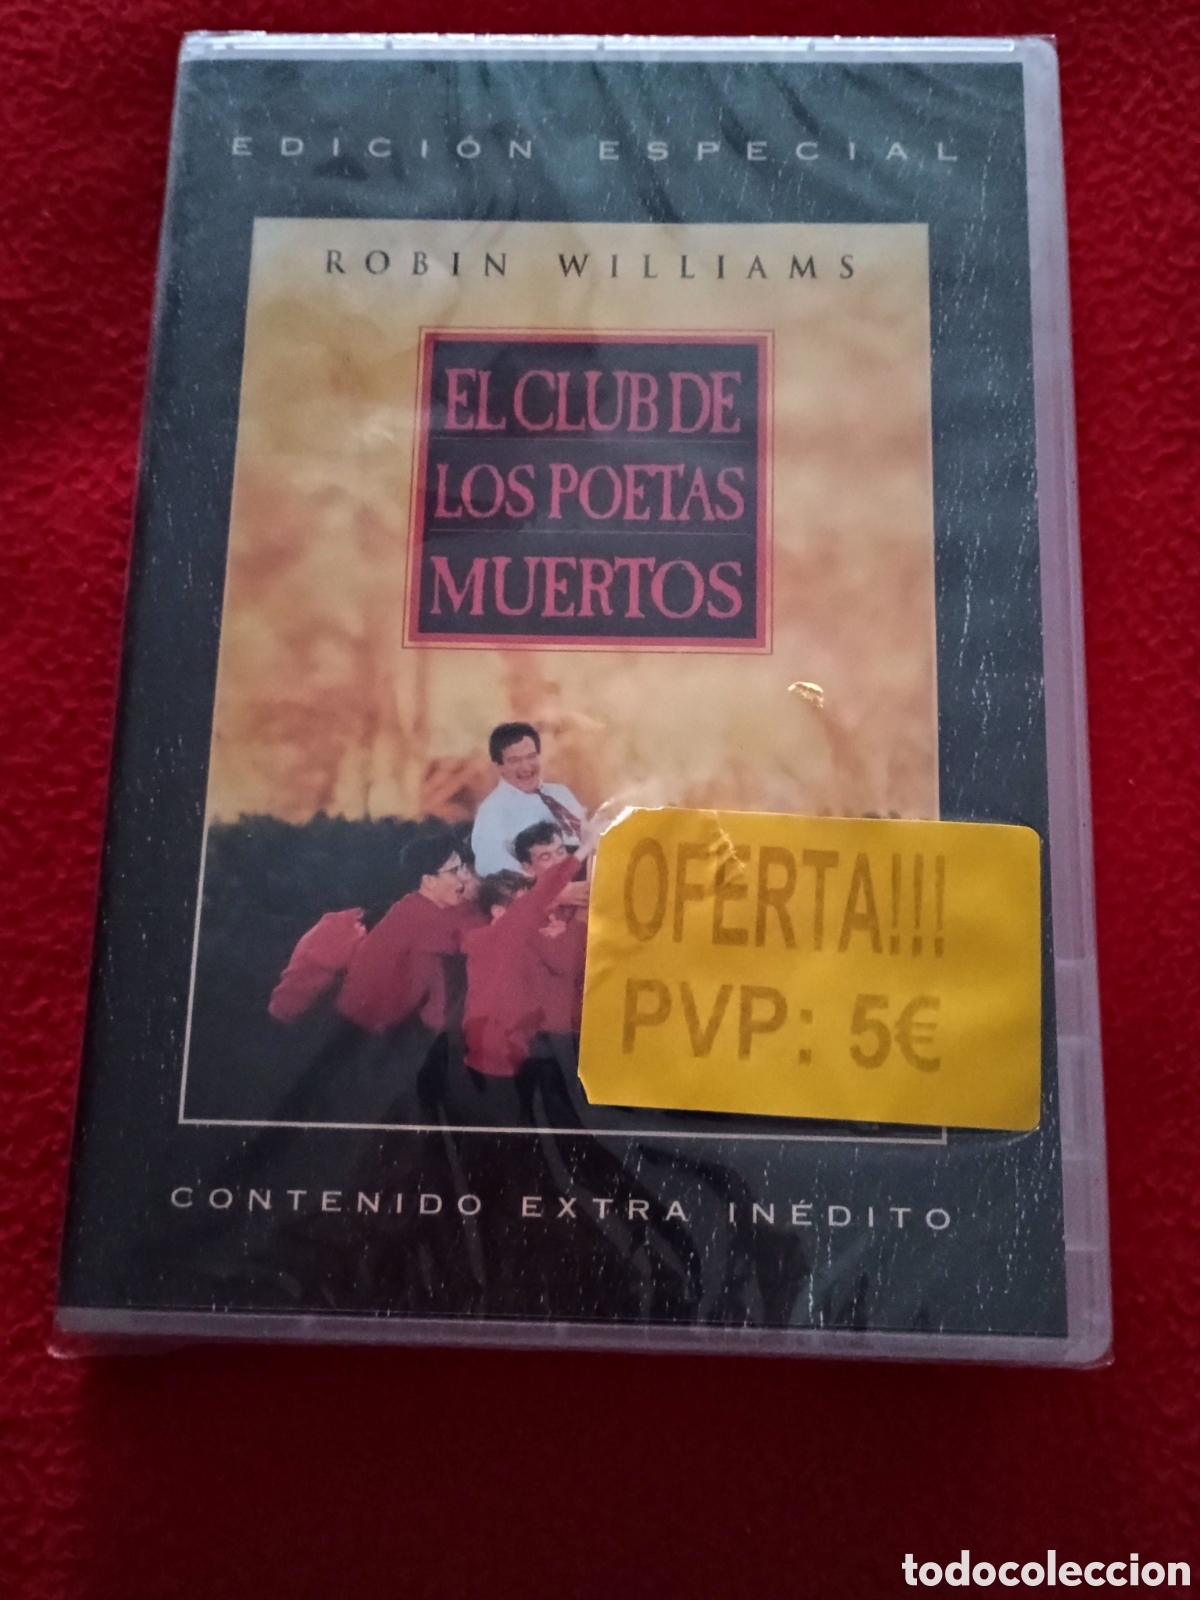 El Club de los Poetas Muertos - DVD